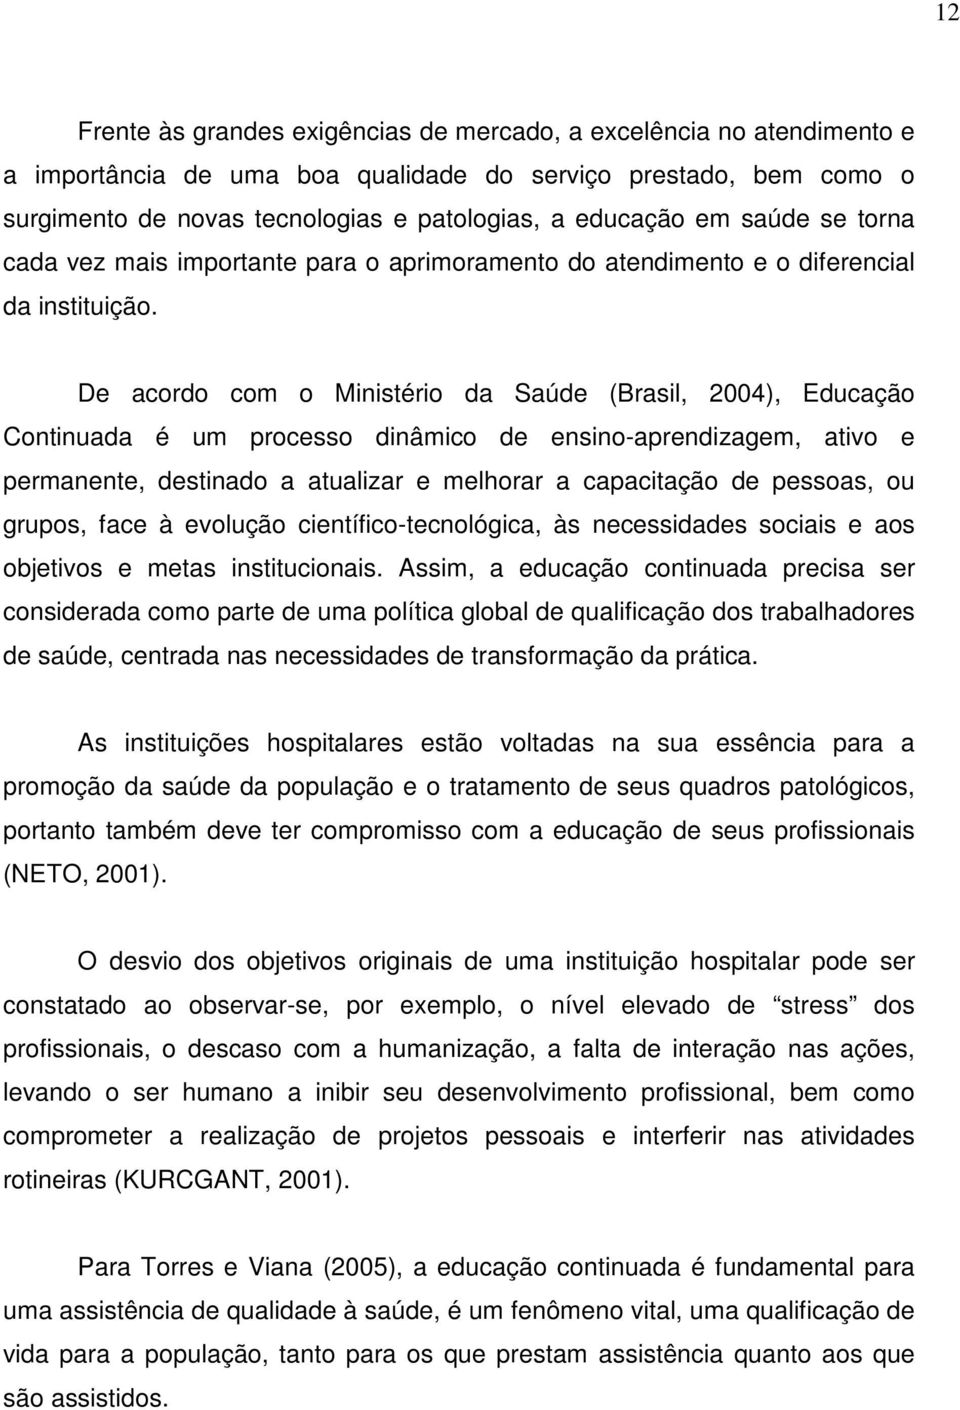 De acordo com o Ministério da Saúde (Brasil, 2004), Educação Continuada é um processo dinâmico de ensino-aprendizagem, ativo e permanente, destinado a atualizar e melhorar a capacitação de pessoas,